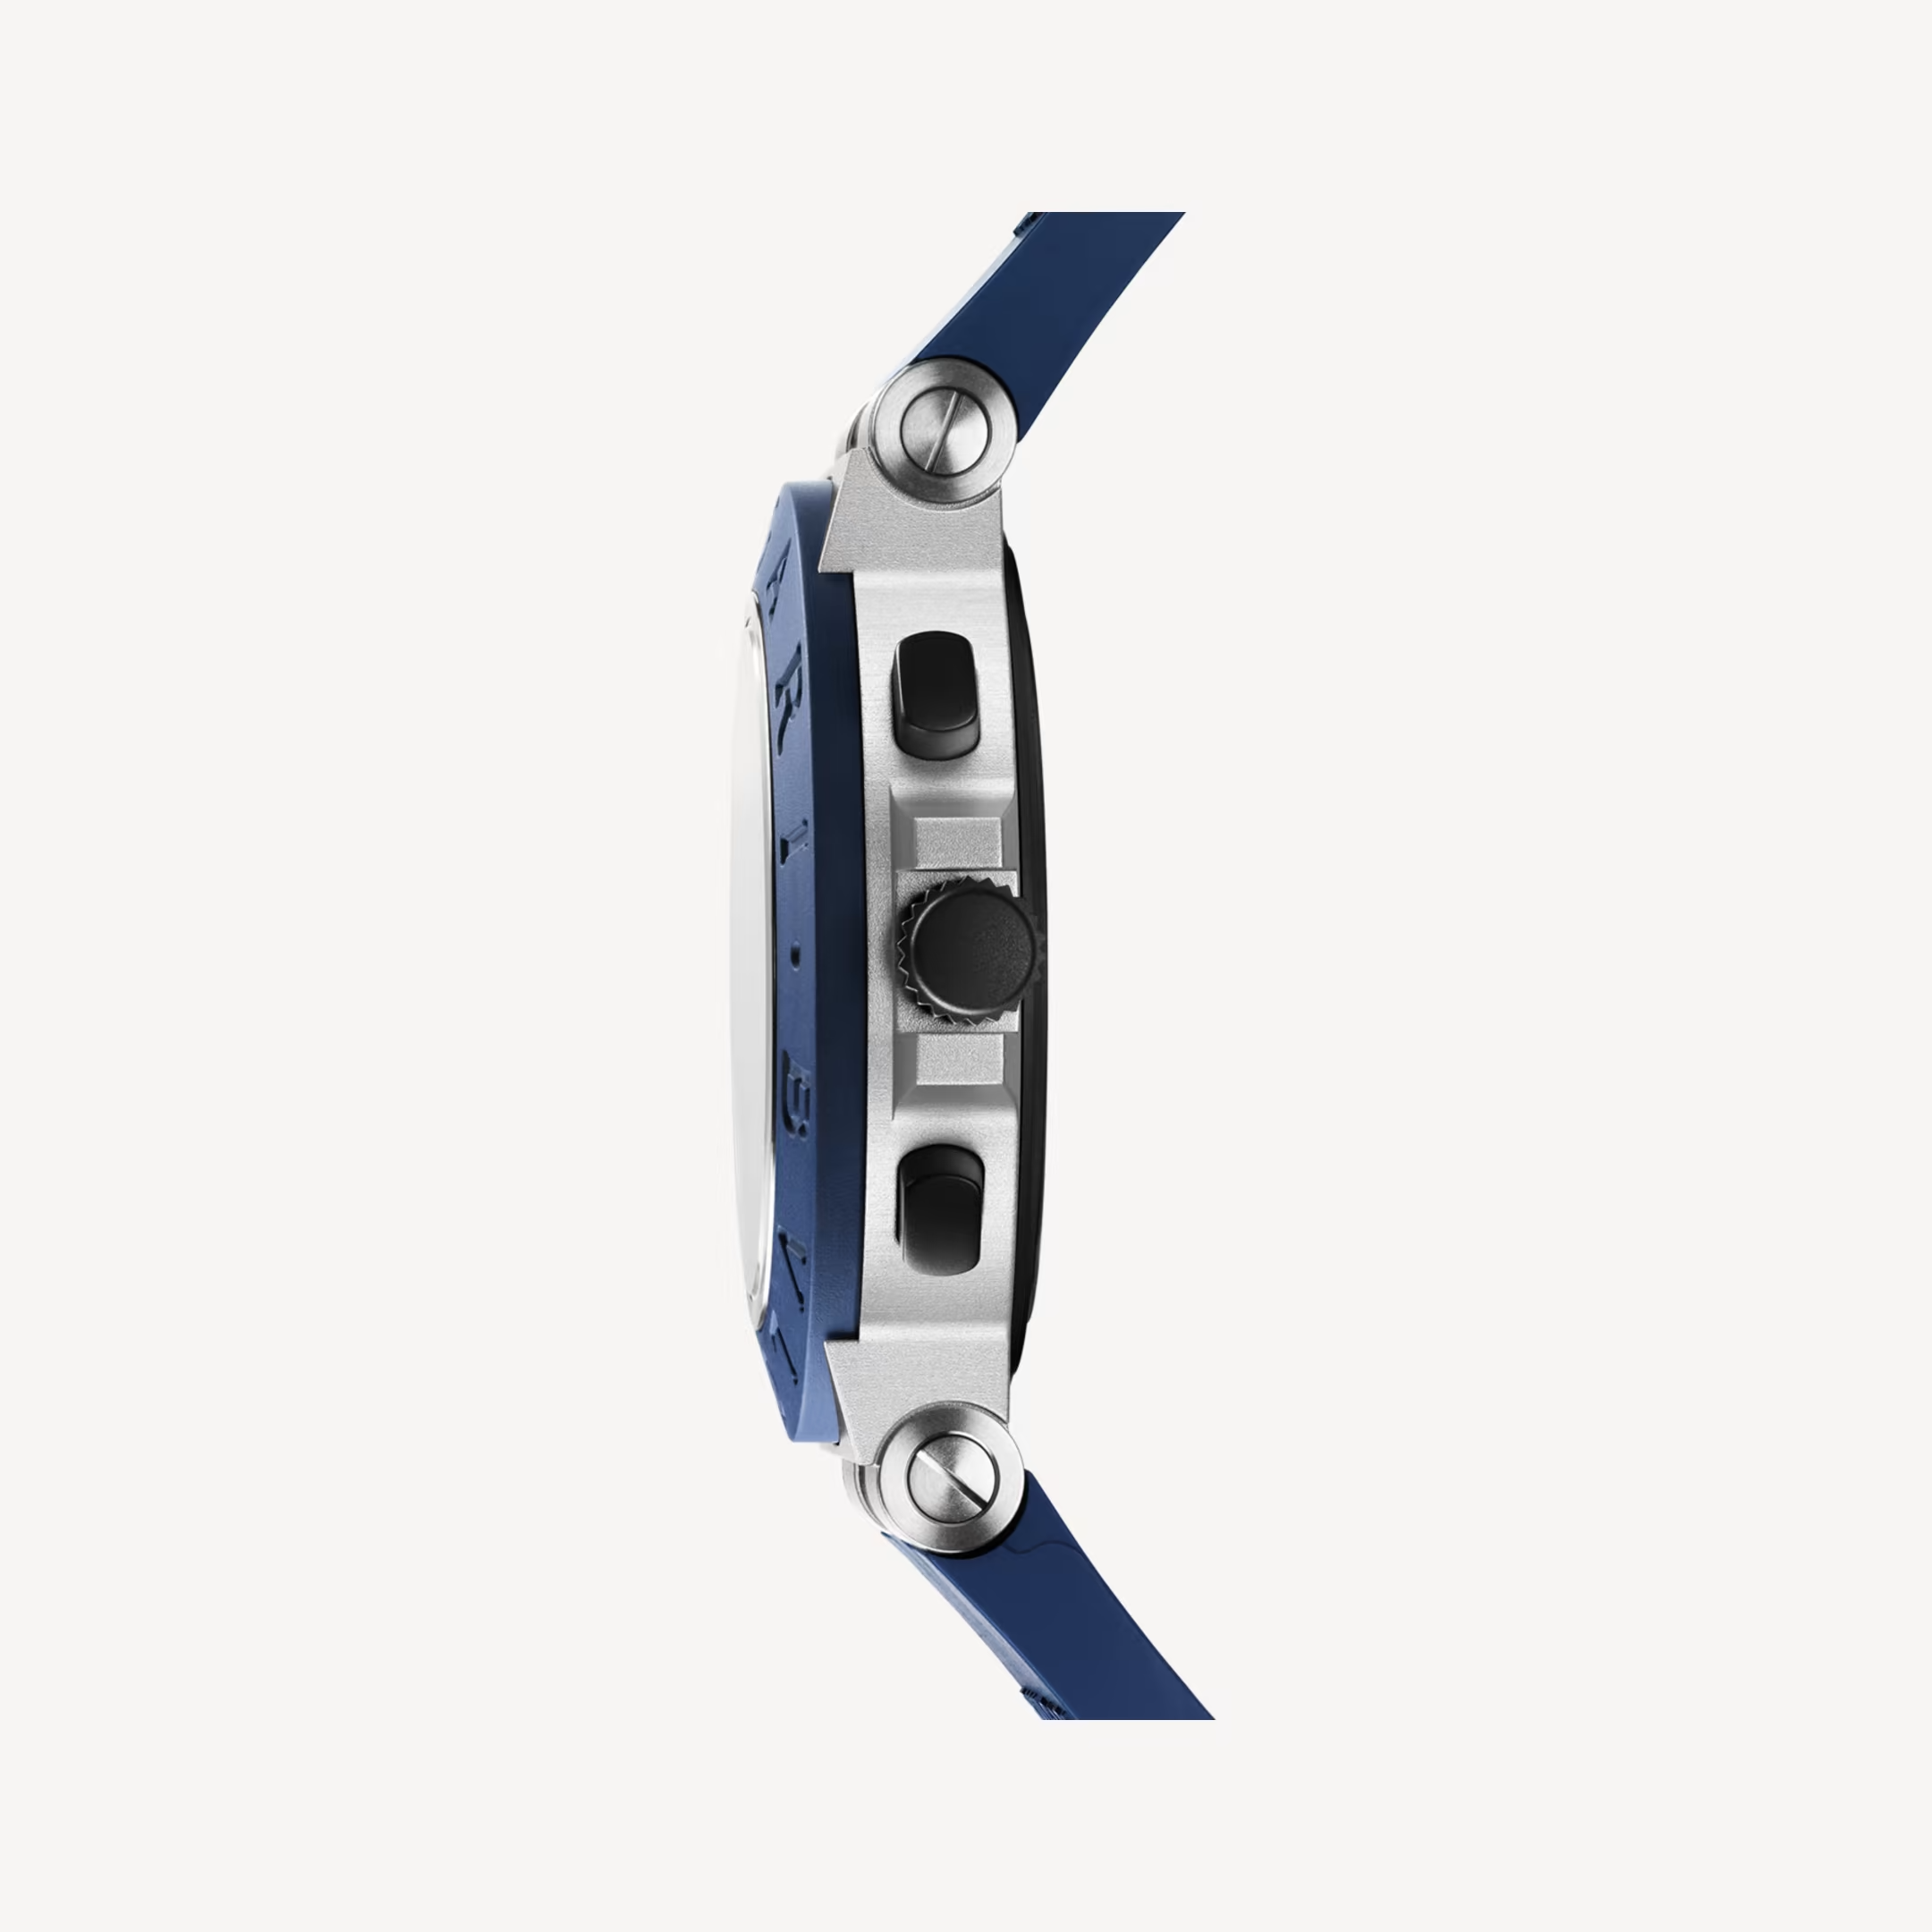 Aluminium Capri Edition Chronograph Rubber Strap Watch